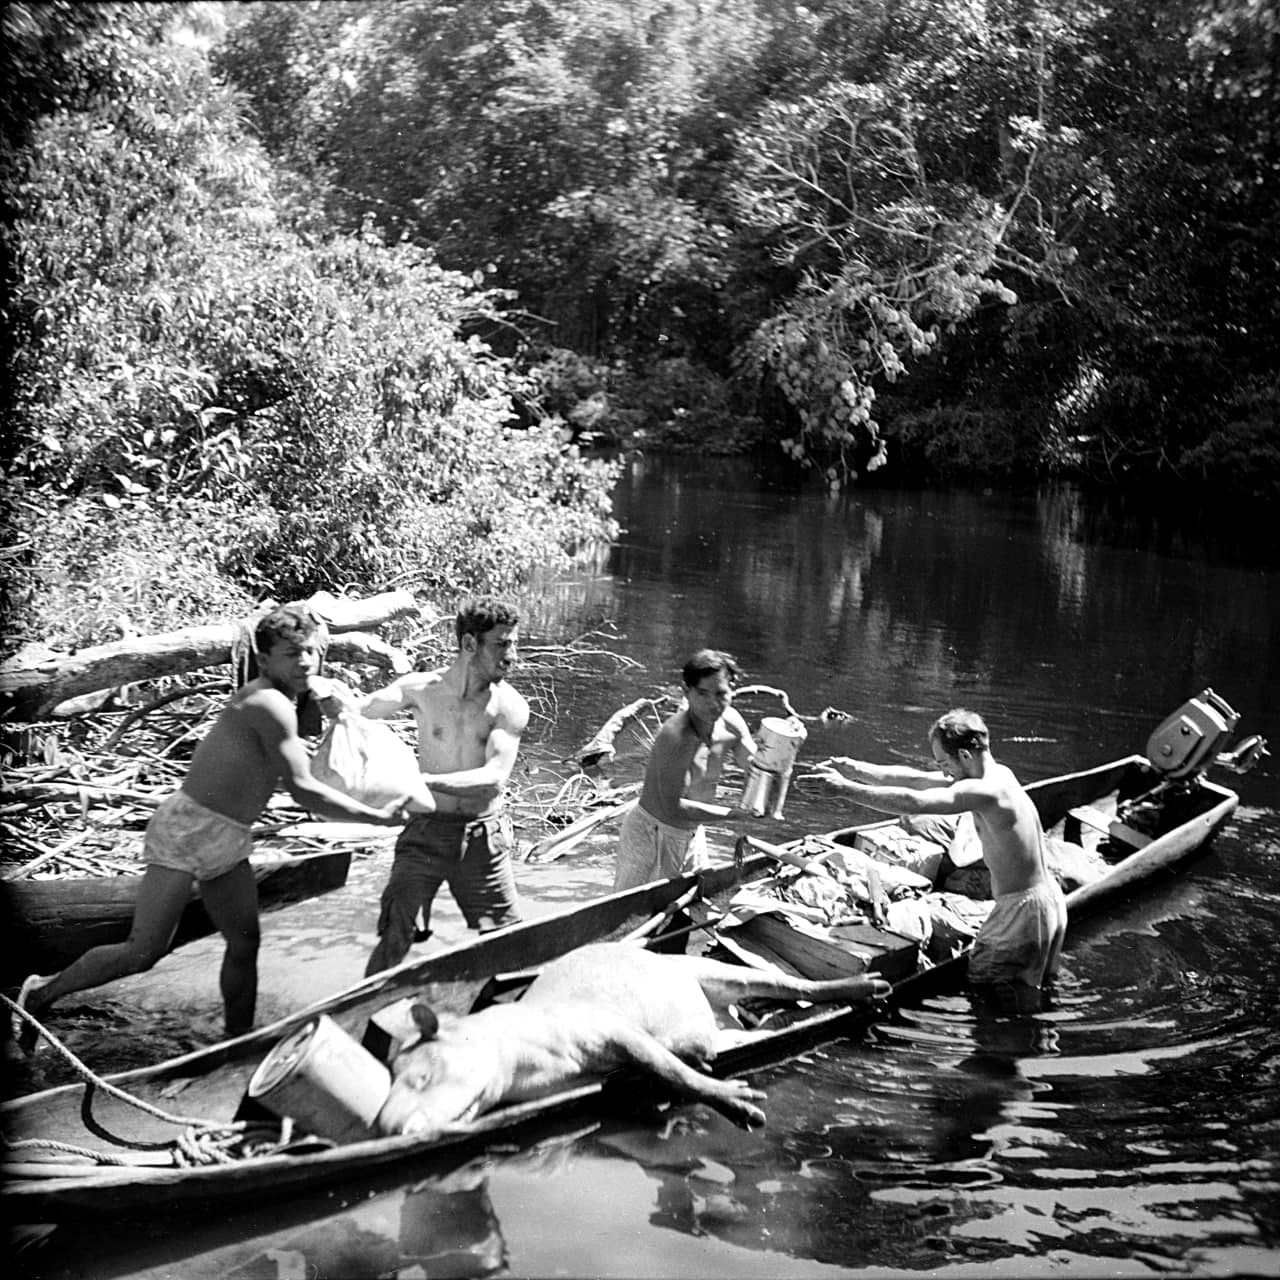 نام شی: قاب عکس برادران امیدوار بر روی رودخانه آمازون در بازگشت از شکارتاپیر/موزه برادران امیدوار